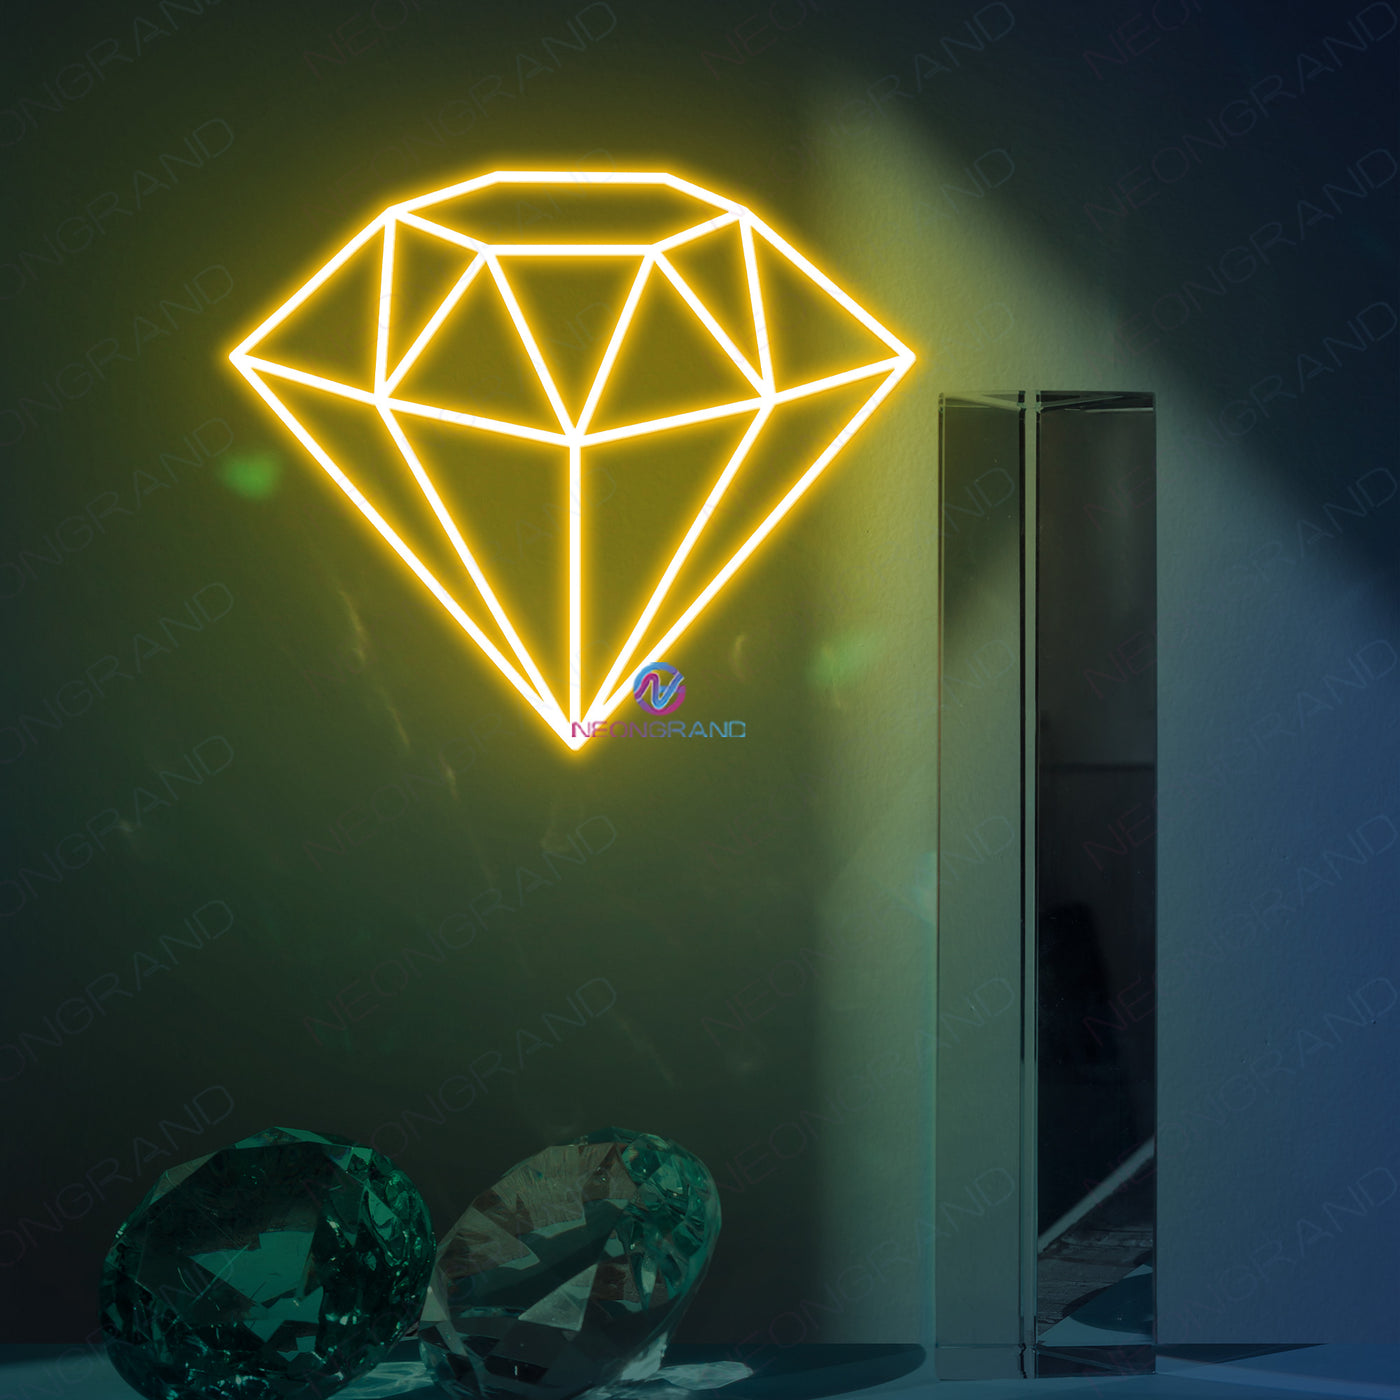 Diamond Neon Sign Aesthetic Led Light